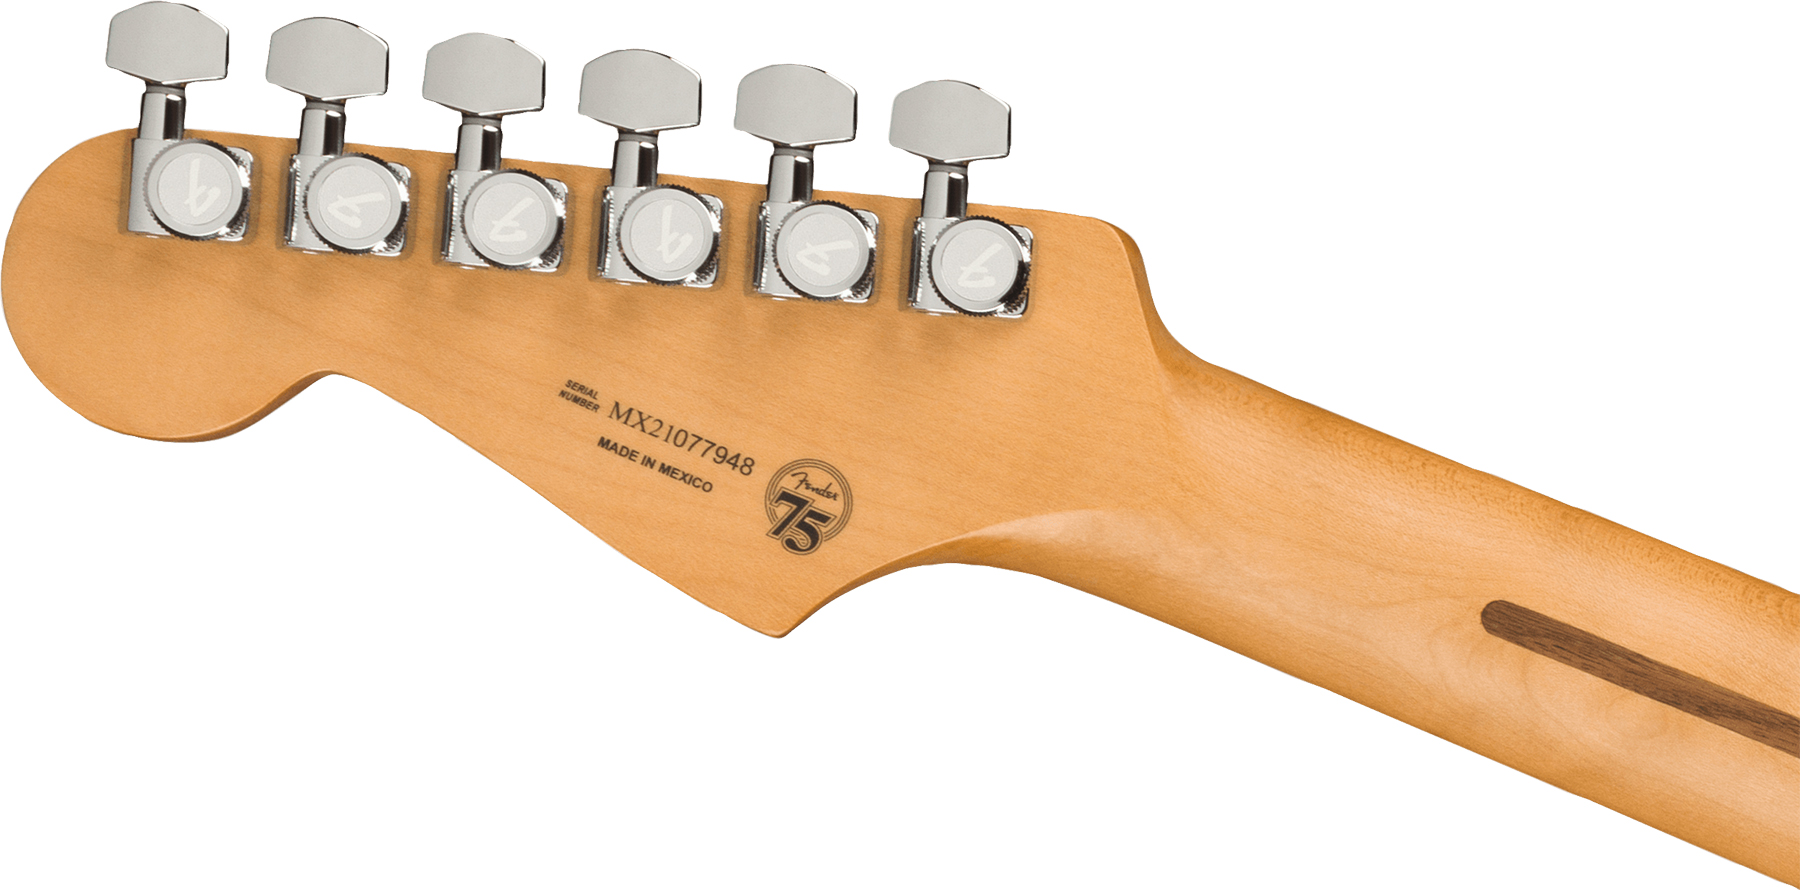 Fender Strat Player Plus Mex 3s Trem Pf - Opal Spark - Elektrische gitaar in Str-vorm - Variation 3